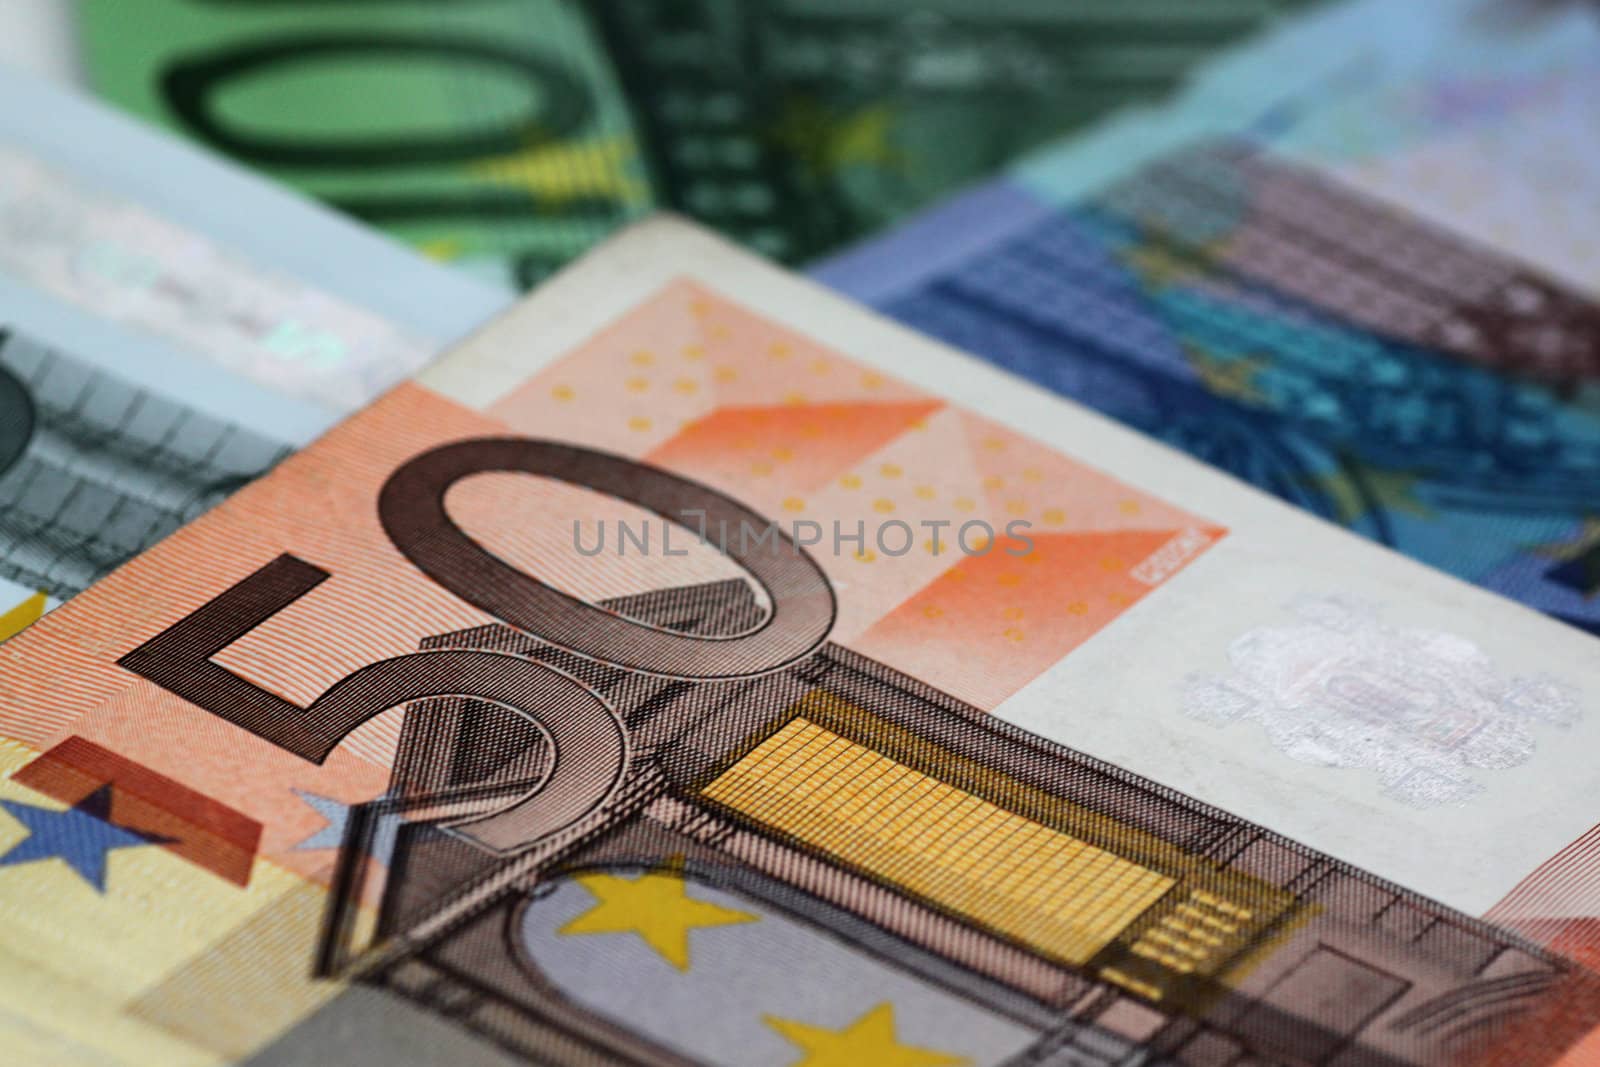 close up of euro banknotes